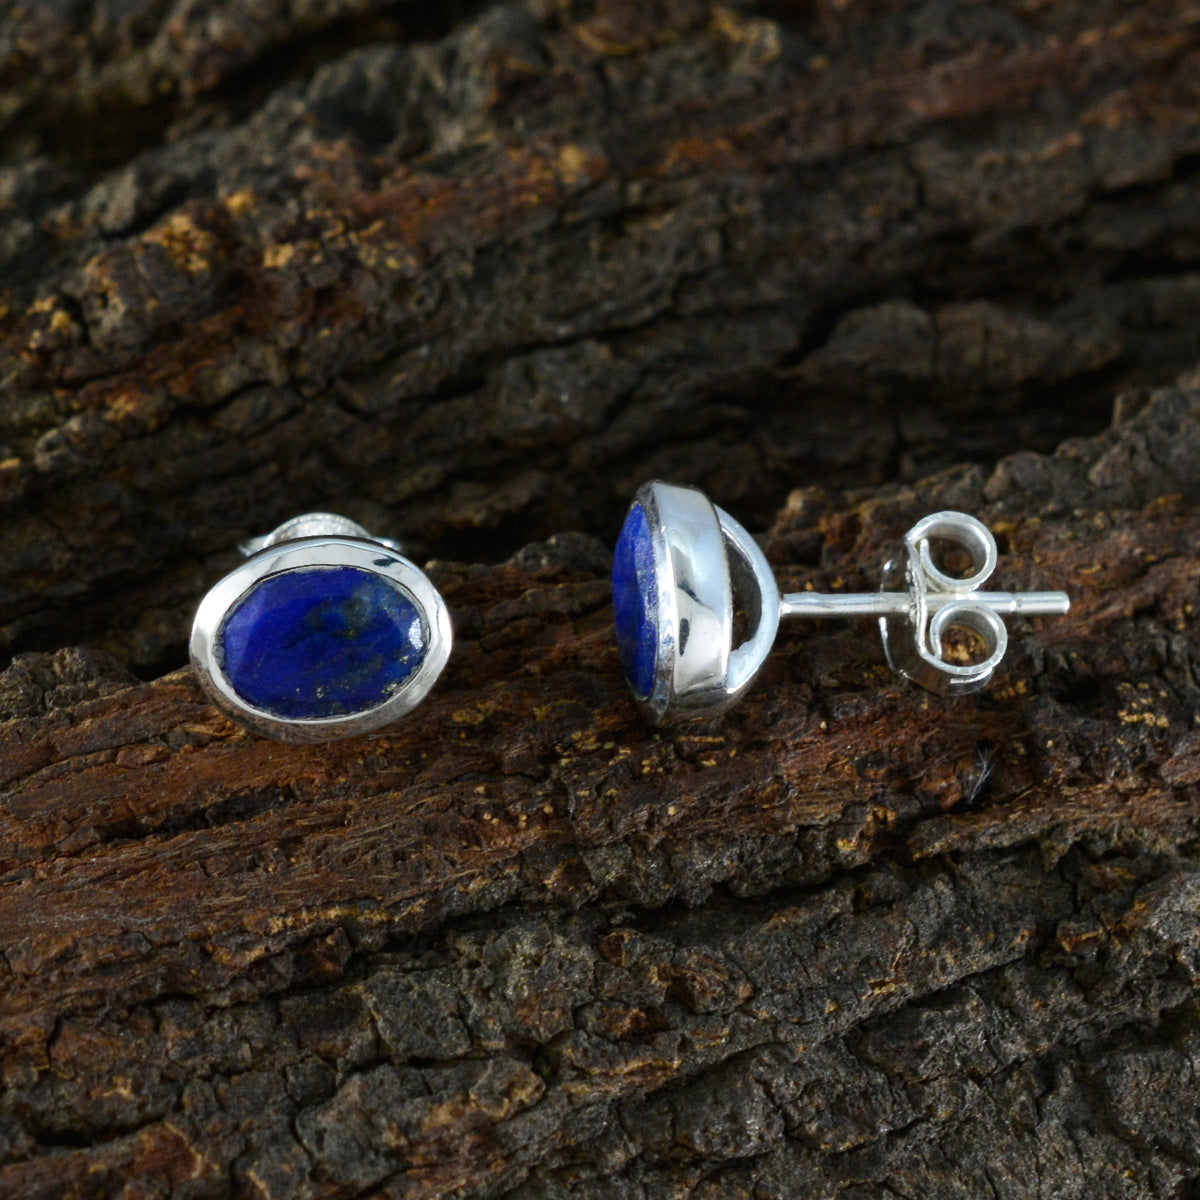 Riyo Bonny 925 Sterling Silver Earring For Women Lapis Lazuli Earring Bezel Setting Blue Earring Stud Earring